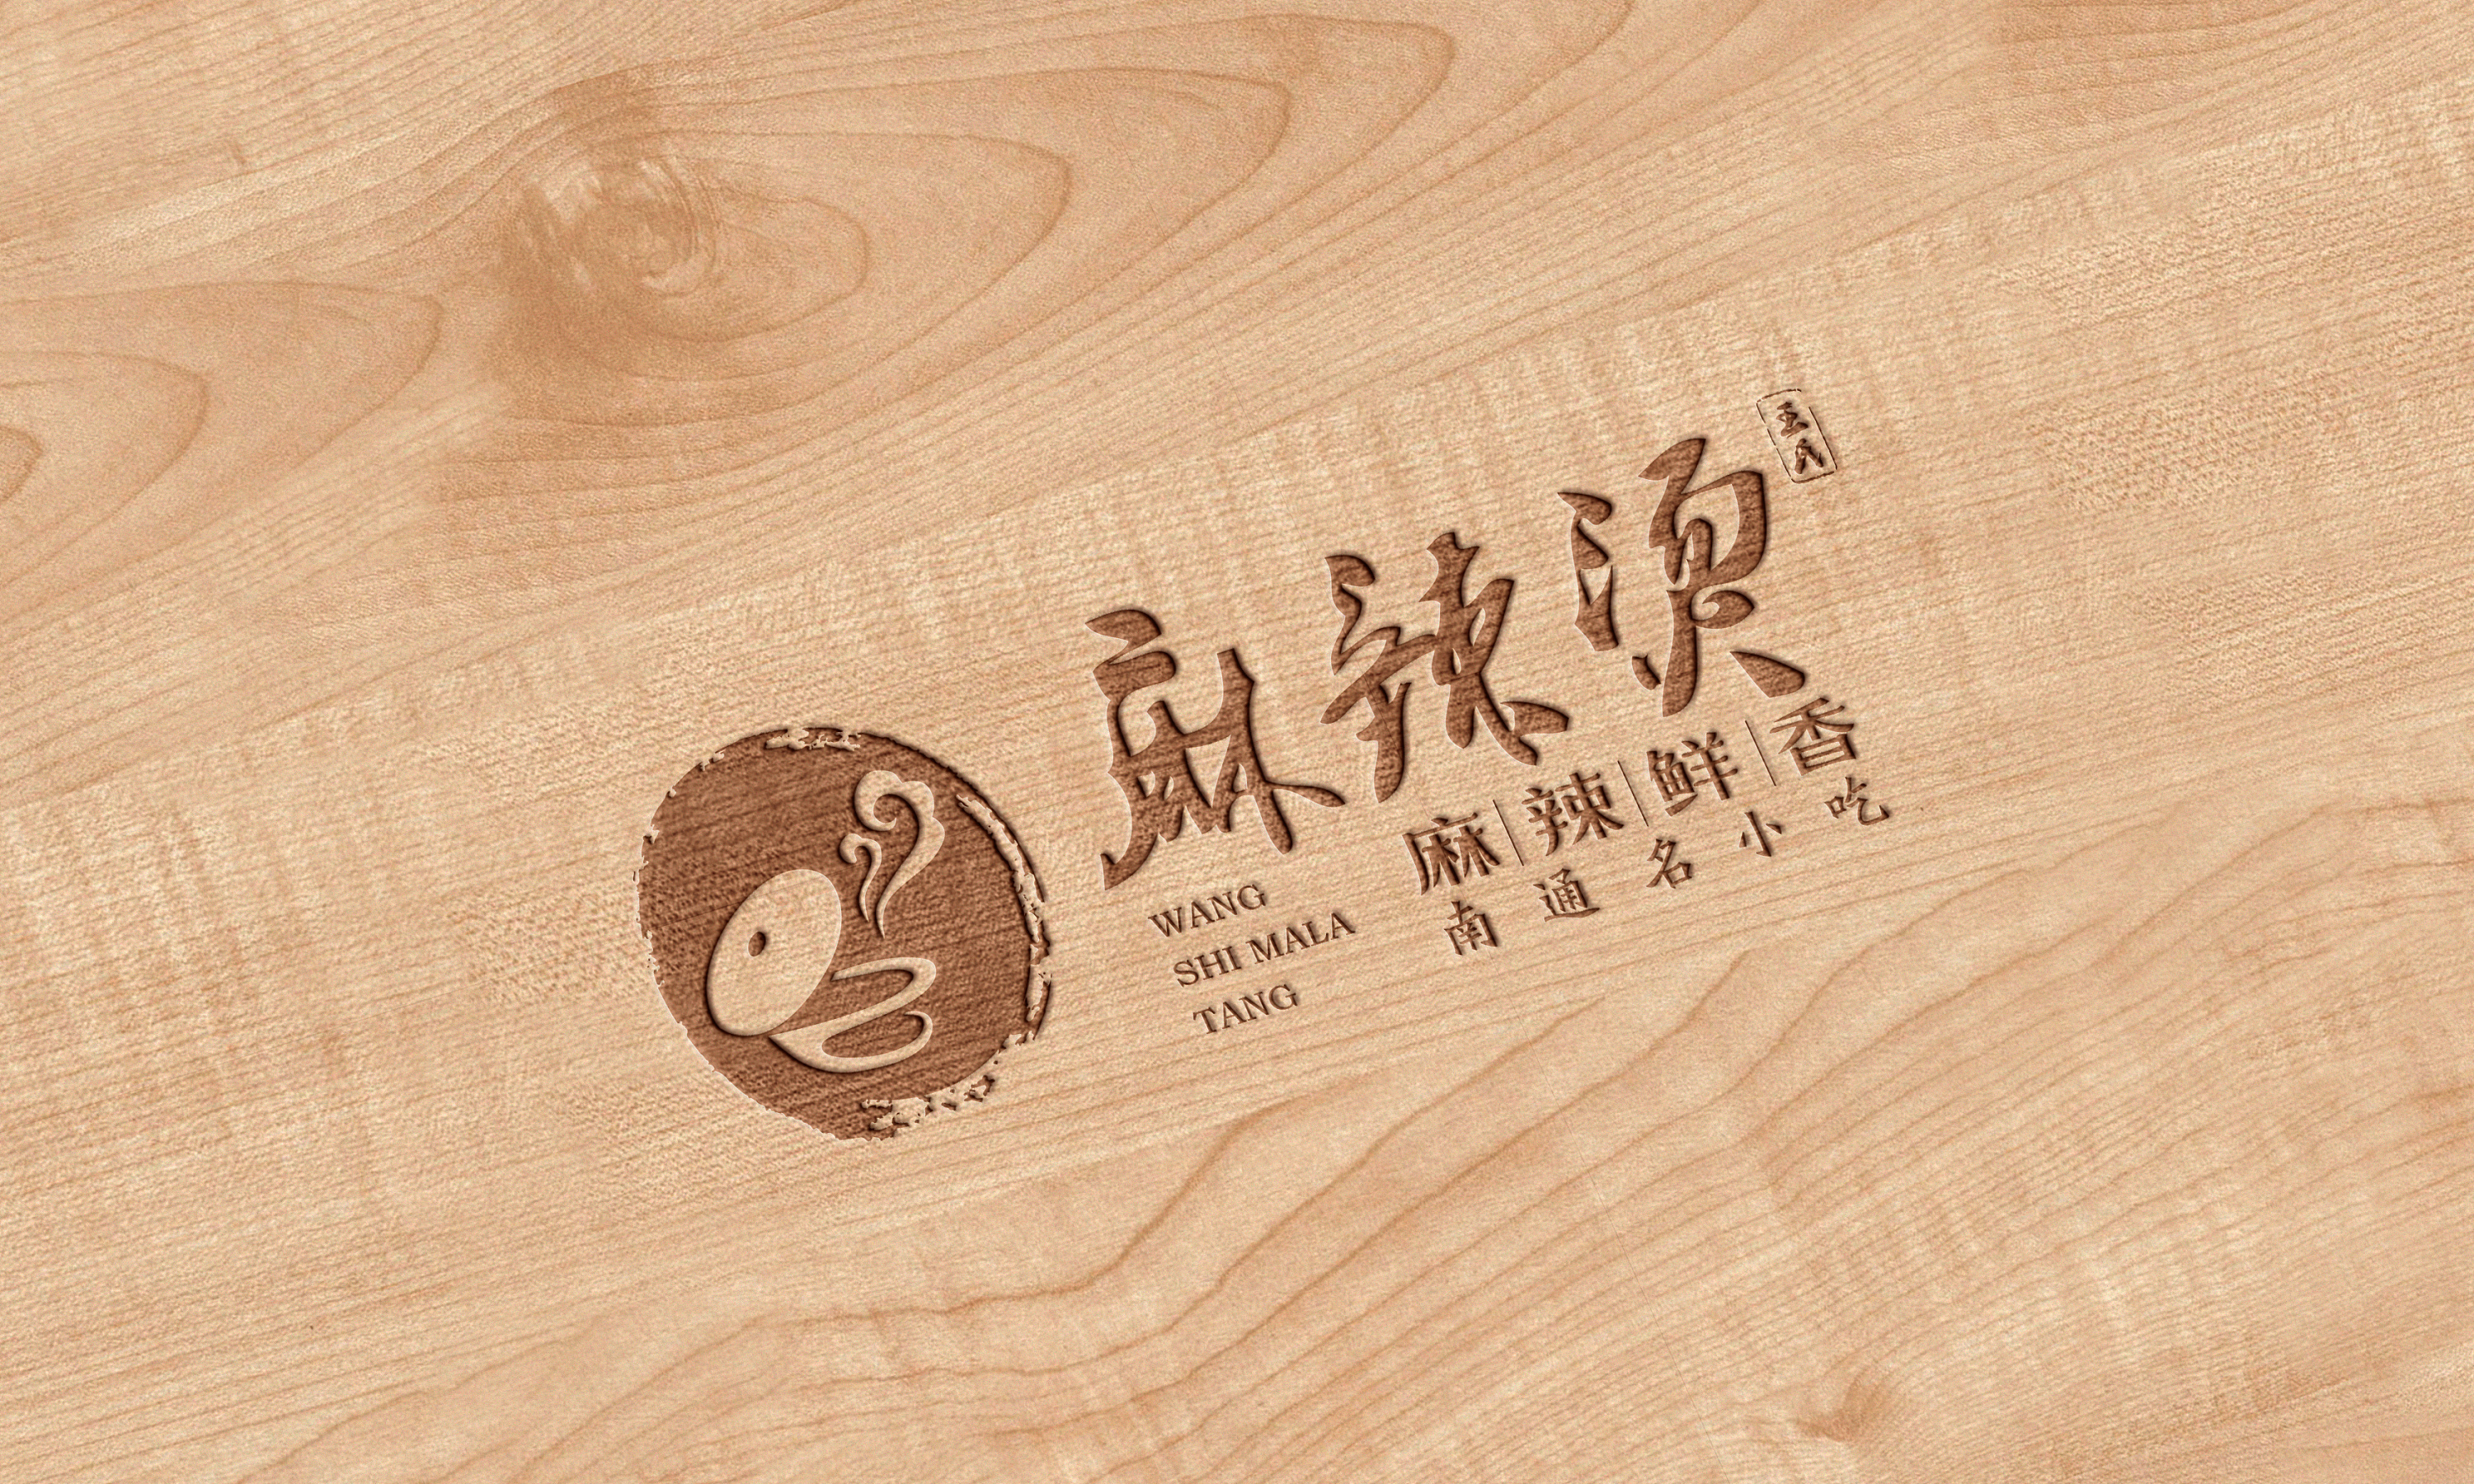 麻辣涮串logo图片